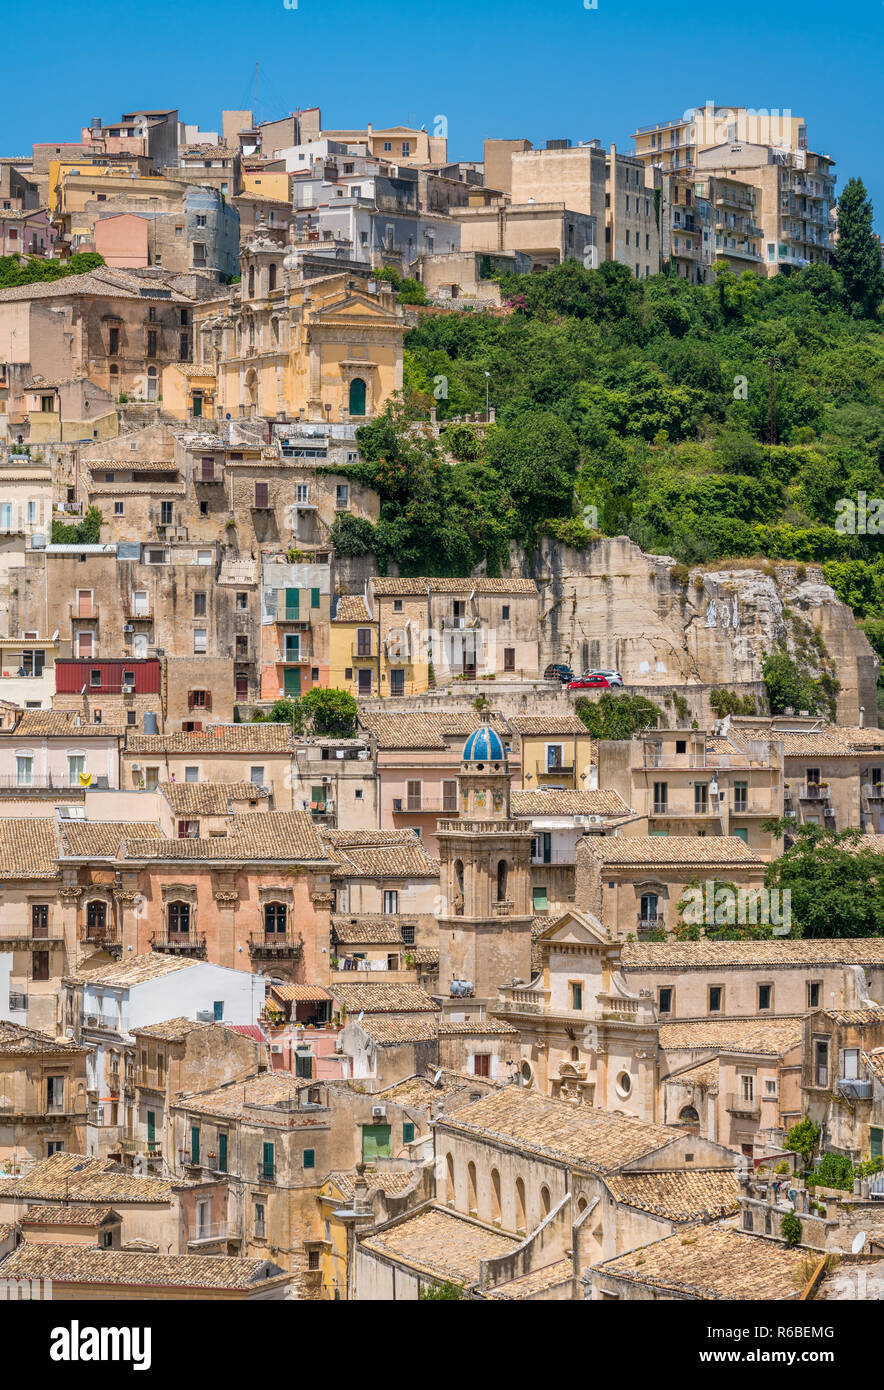 Vue panoramique de Ragusa Ibla, ville baroque en Sicile (Sicilia), dans le sud de l'Italie. Banque D'Images